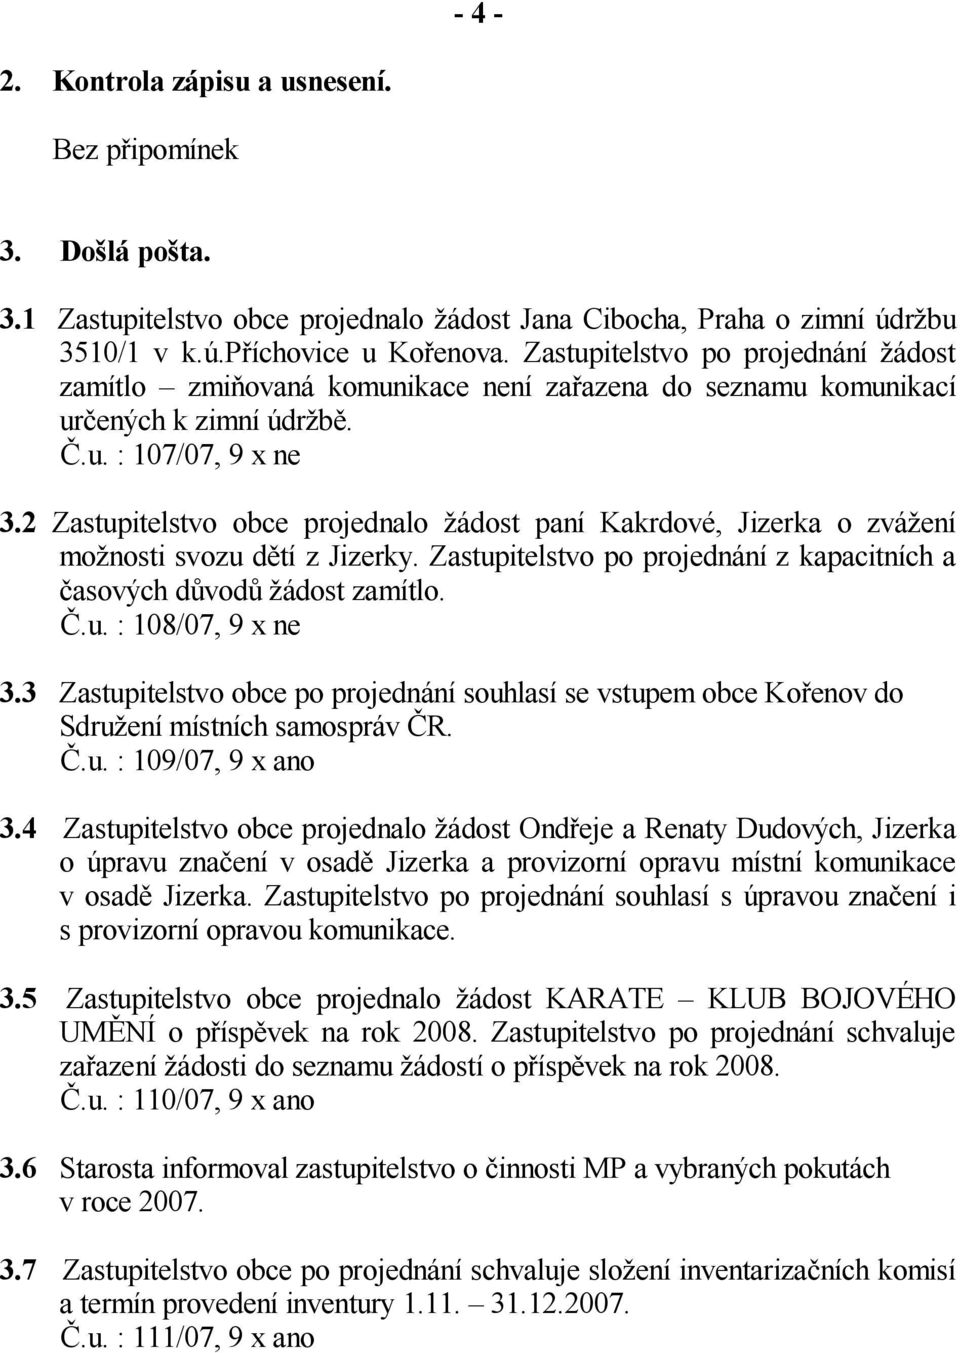 2 Zastupitelstvo obce projednalo ádost paní Kakrdové, Jizerka o zvá ení mo nosti svozu d tí z Jizerky. Zastupitelstvo po projednání z kapacitních a asových d vod ádost zamítlo..u. : 108/07, 9 x ne 3.